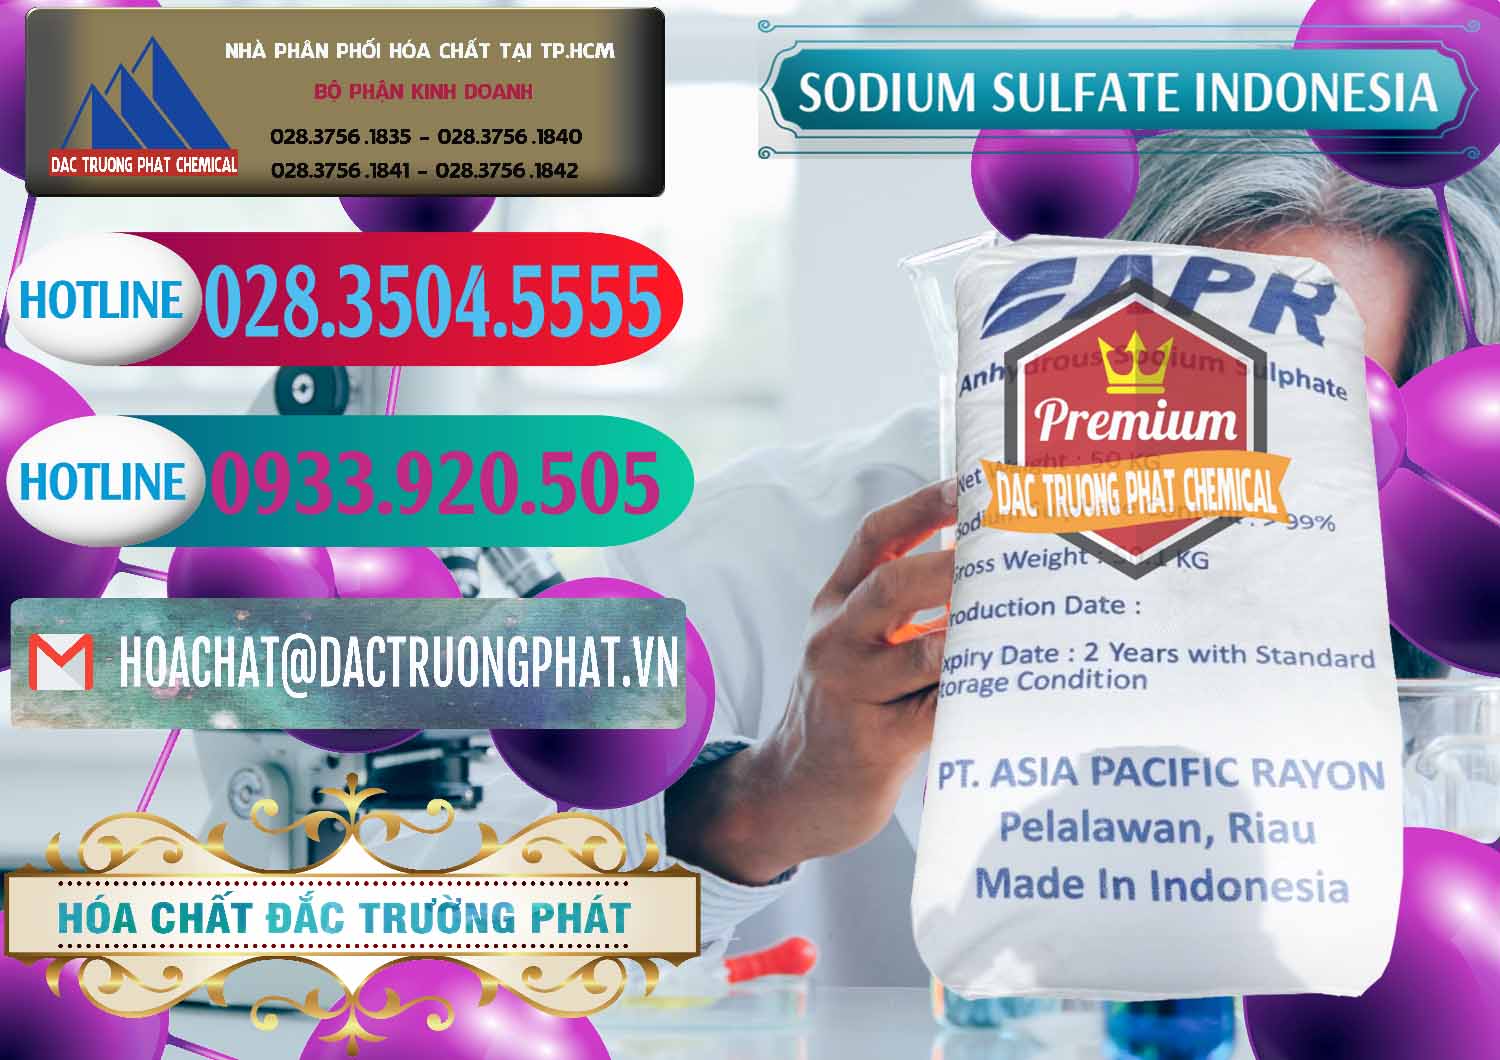 Cty nhập khẩu _ bán Sodium Sulphate - Muối Sunfat Na2SO4 APR Indonesia - 0460 - Cty chuyên cung ứng - phân phối hóa chất tại TP.HCM - truongphat.vn